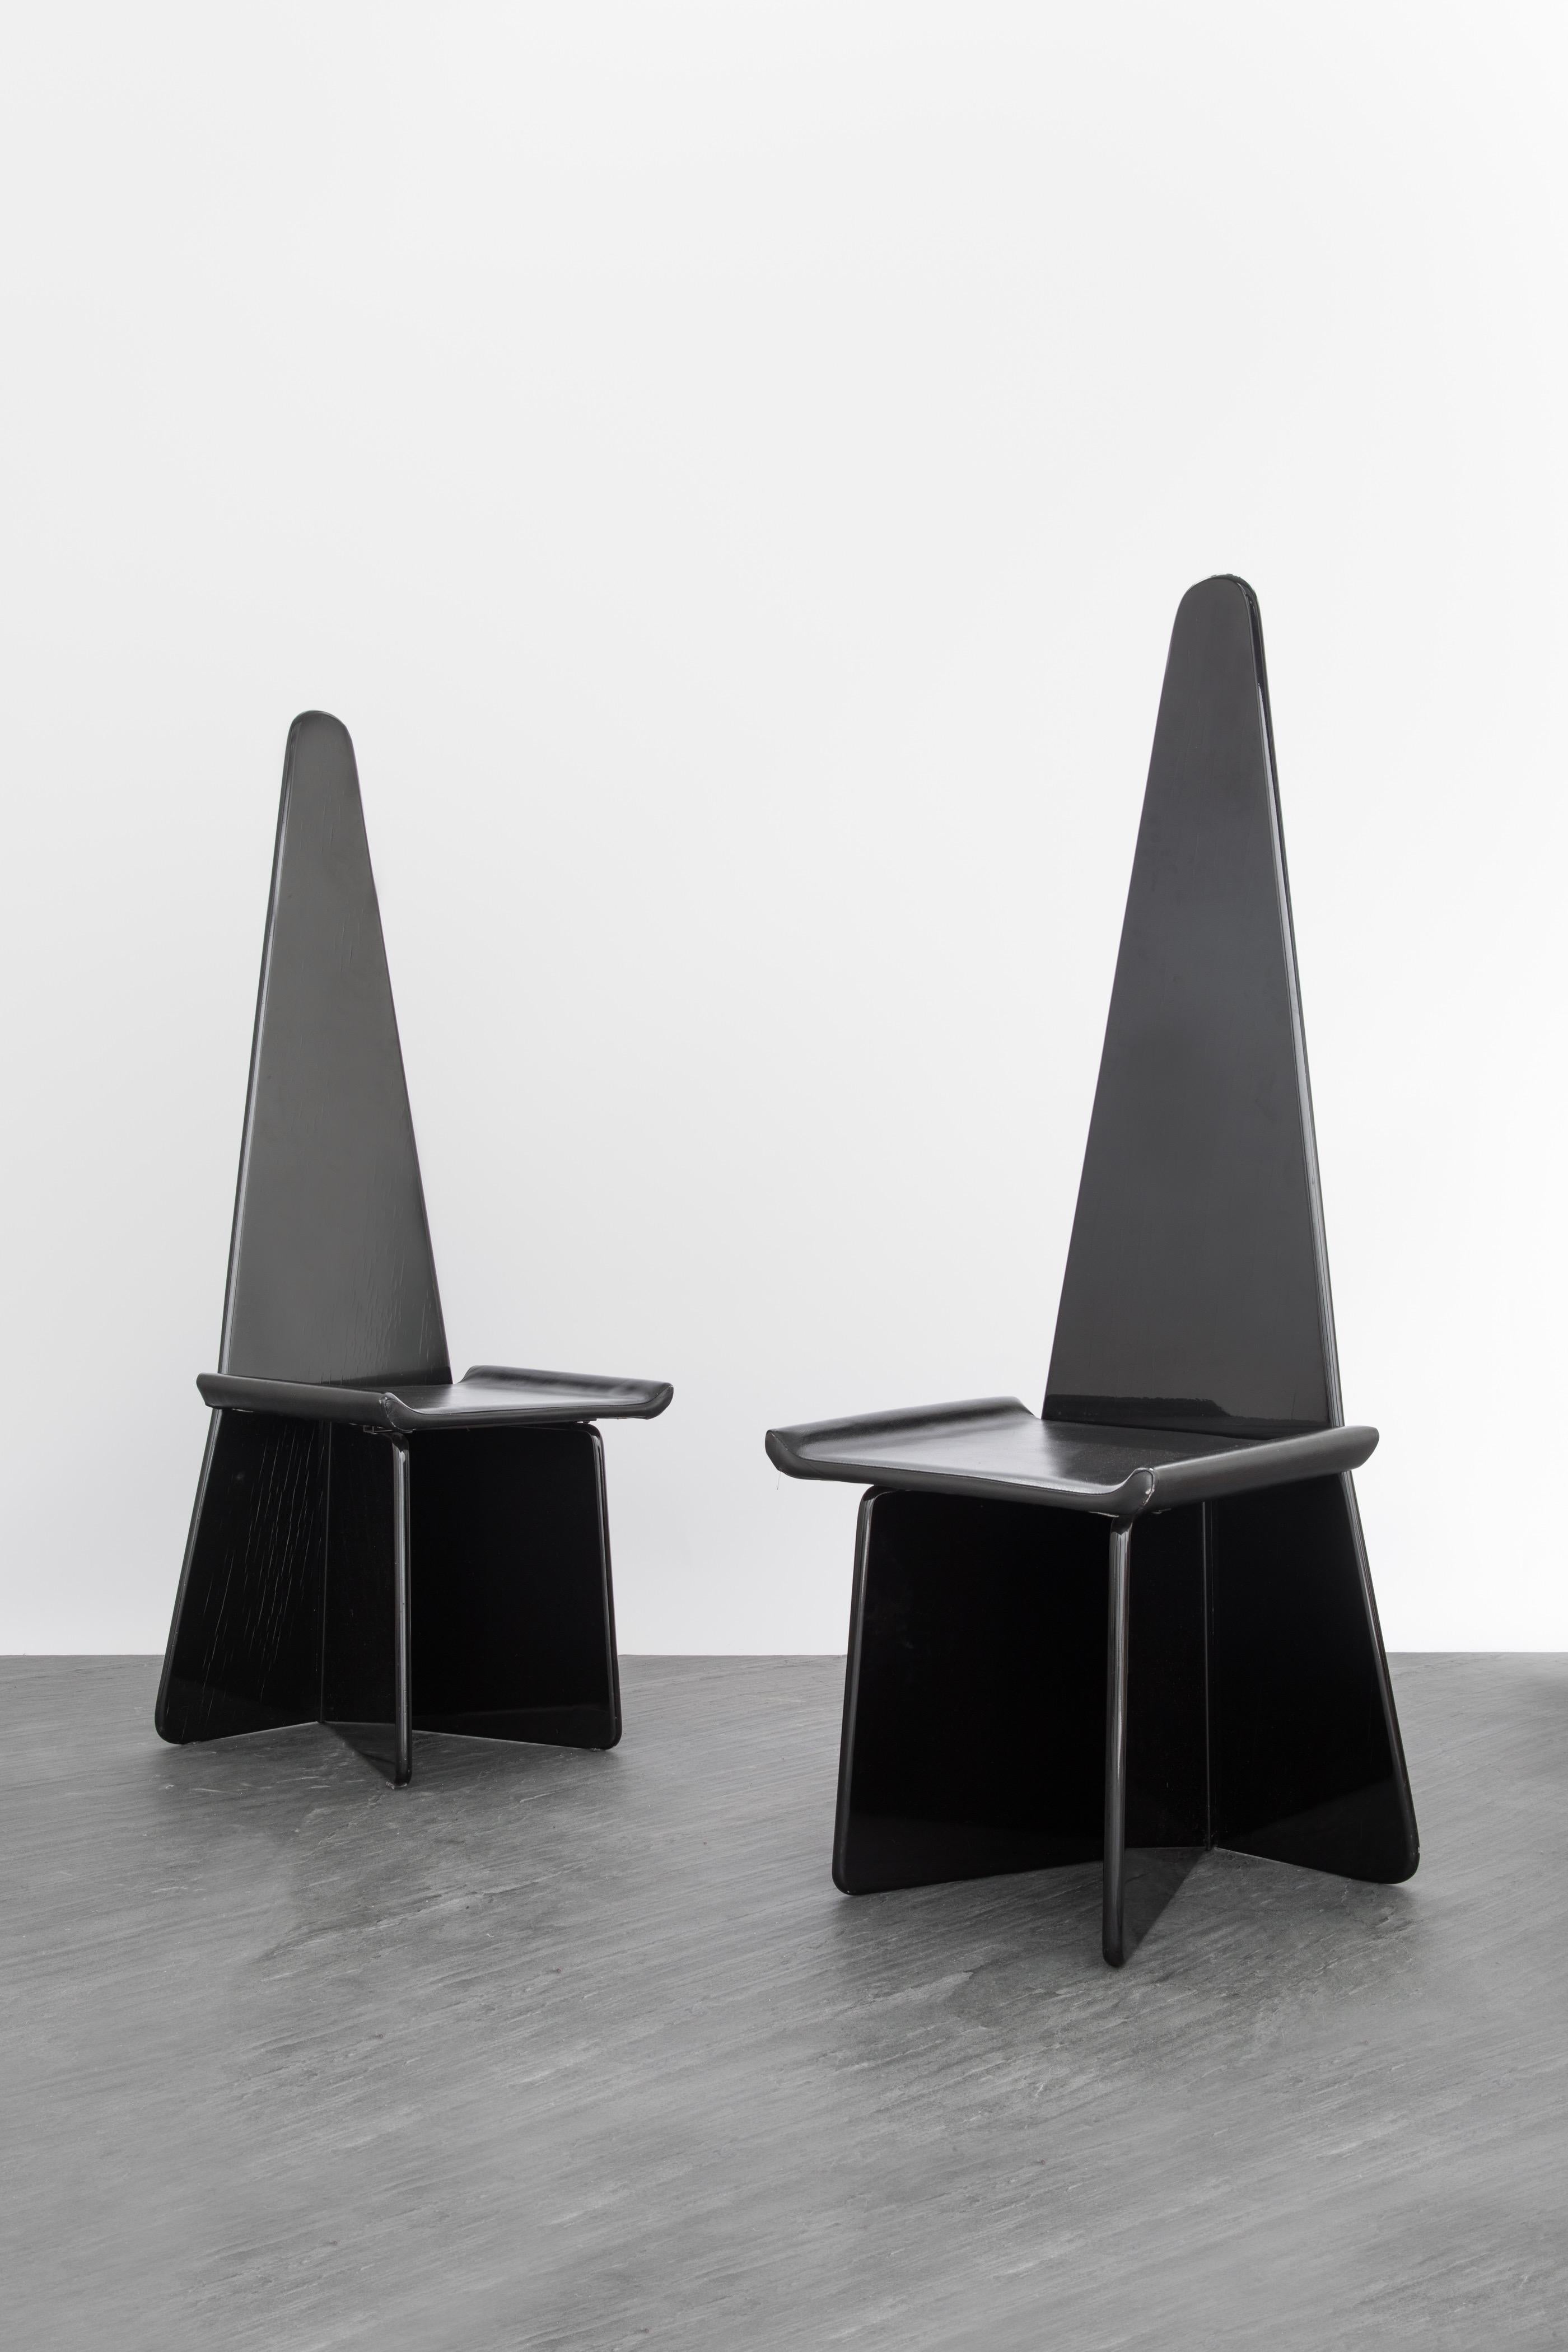 Antonio Ronchetti pour Sormani
Ensemble de 6 chaises sculpturales, Circa 1970
Bois laqué noir, cuir noir
H. 135 x 46 x 42 cm